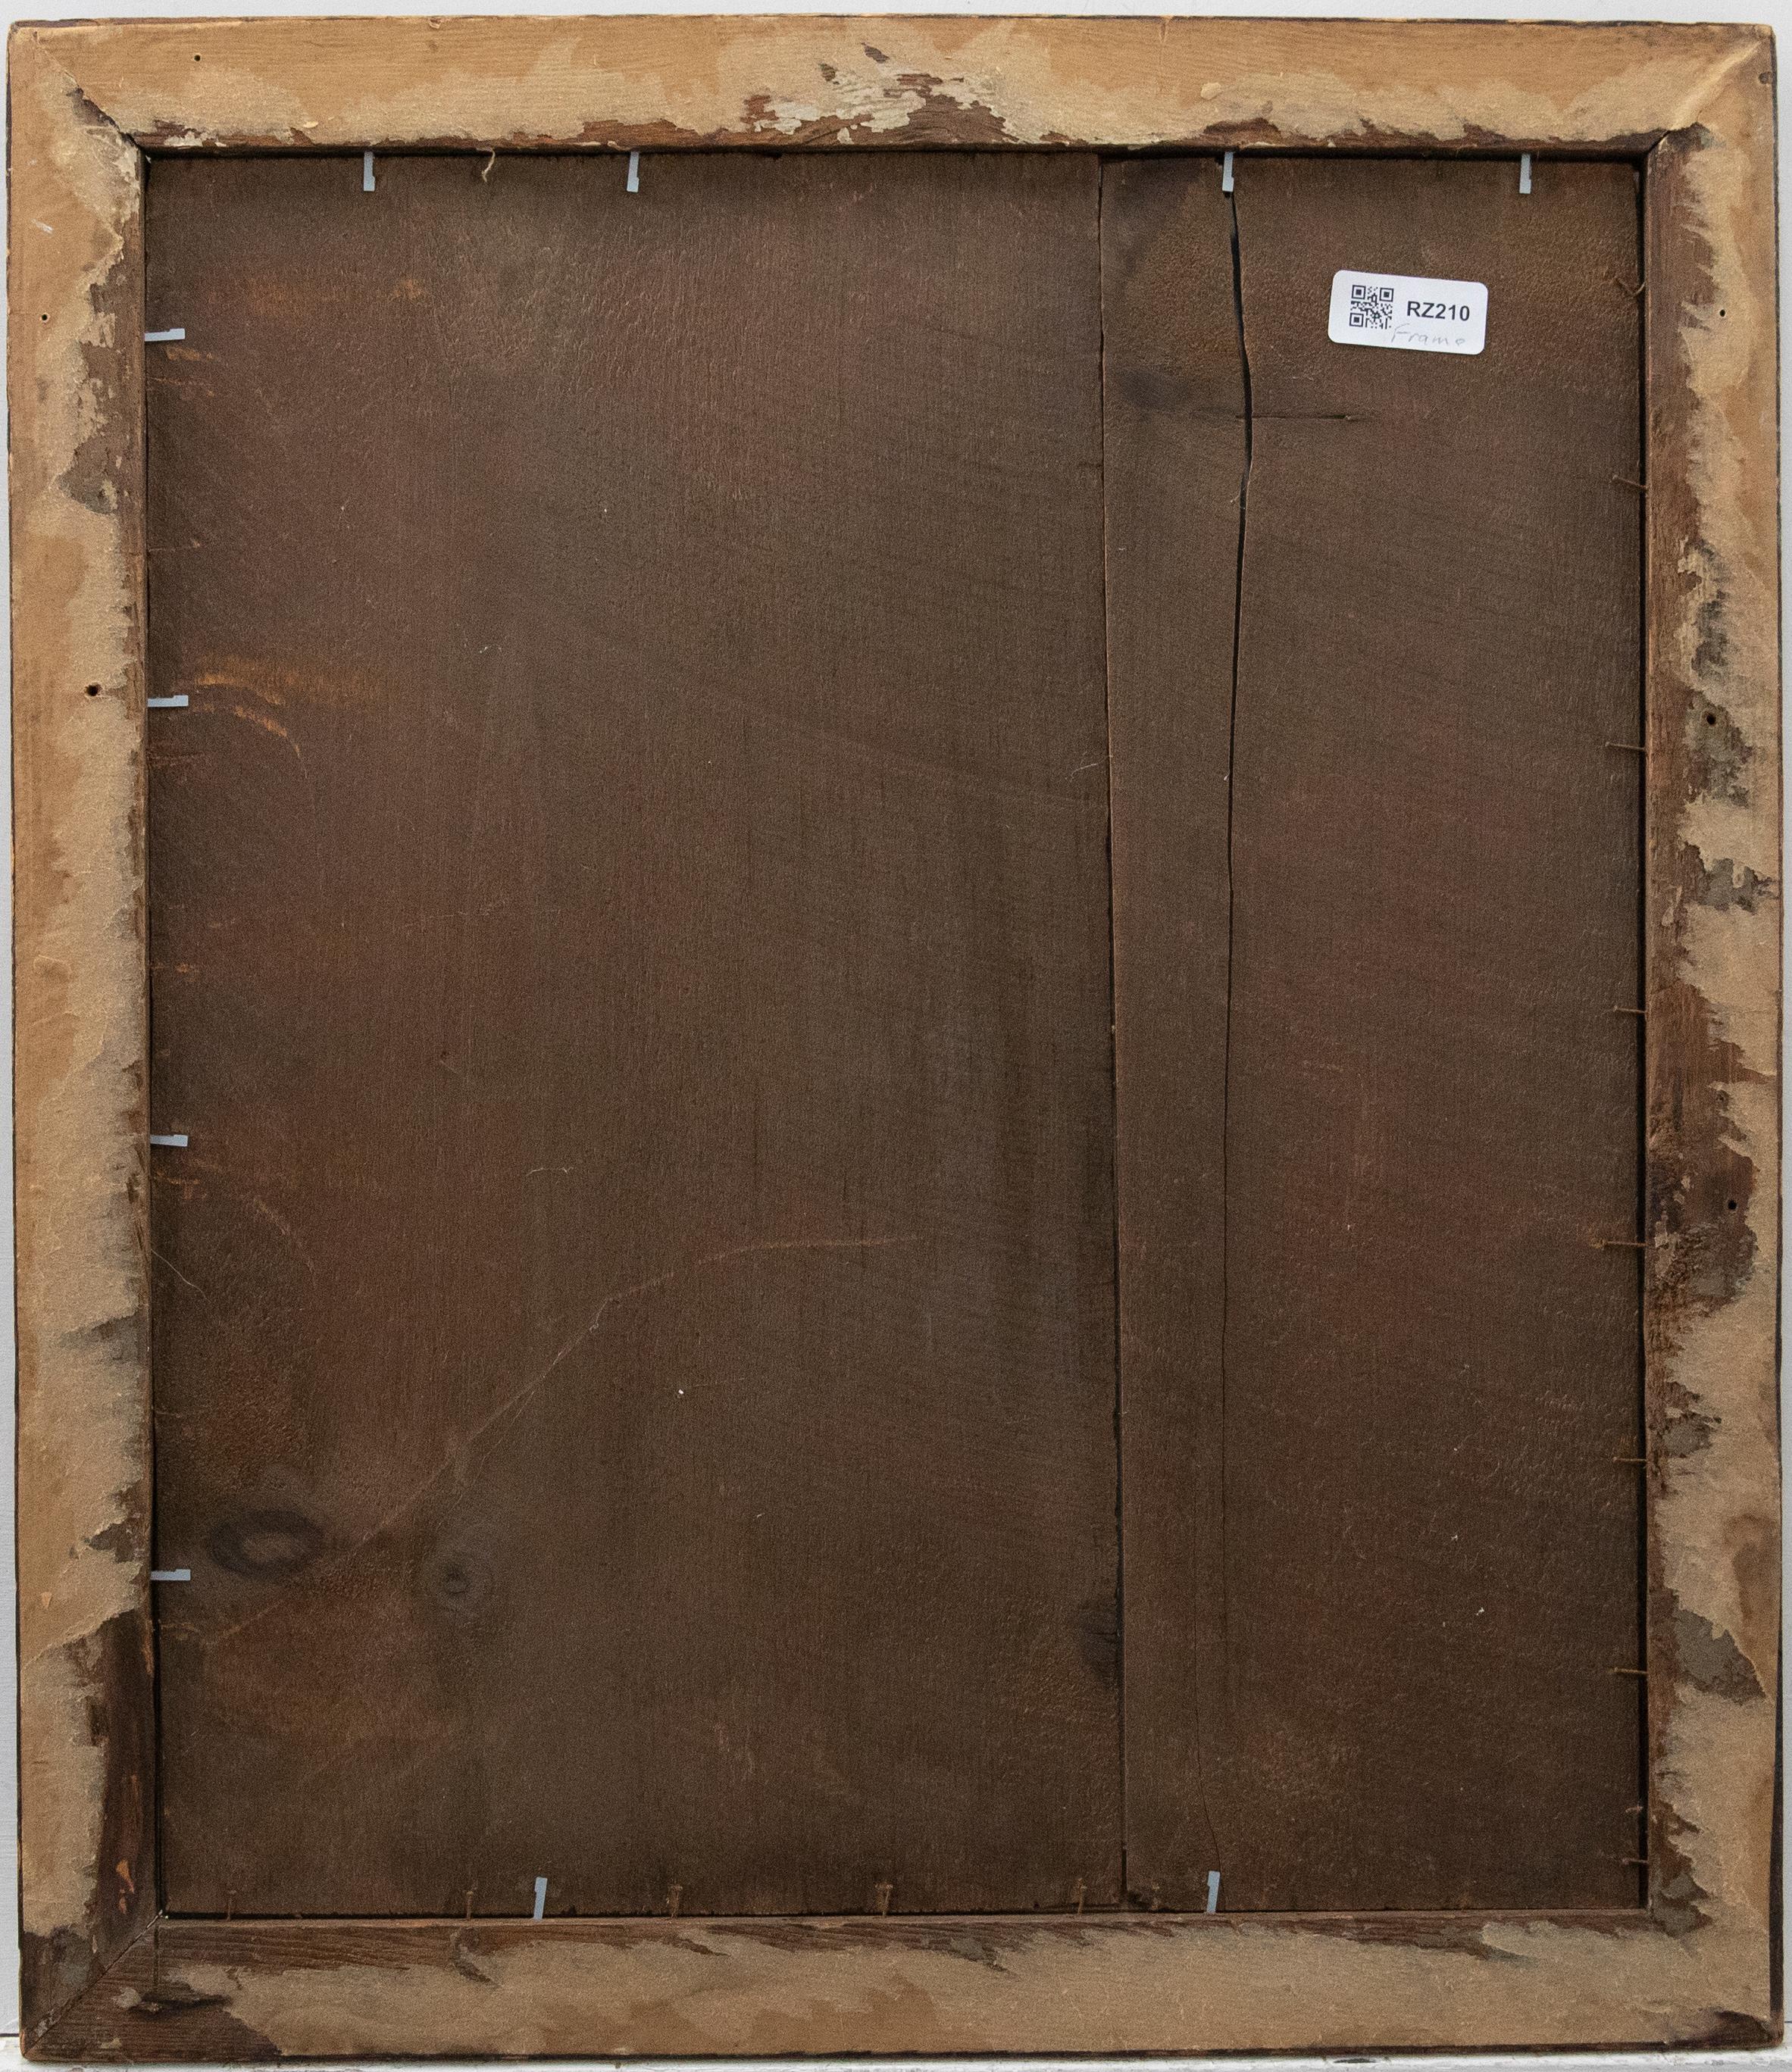 Ein sehr schöner Rahmen aus Vogelaugenahorn des späten 19. Jahrhunderts mit Innenvergoldung und Originalverglasung. Der Rahmen hat eine wunderbare Lackierung mit reizvollen Gratdetails. Maße für den Rahmen : Falz, 42,5cm x 50,5cm, Fenster, 38,5cm x